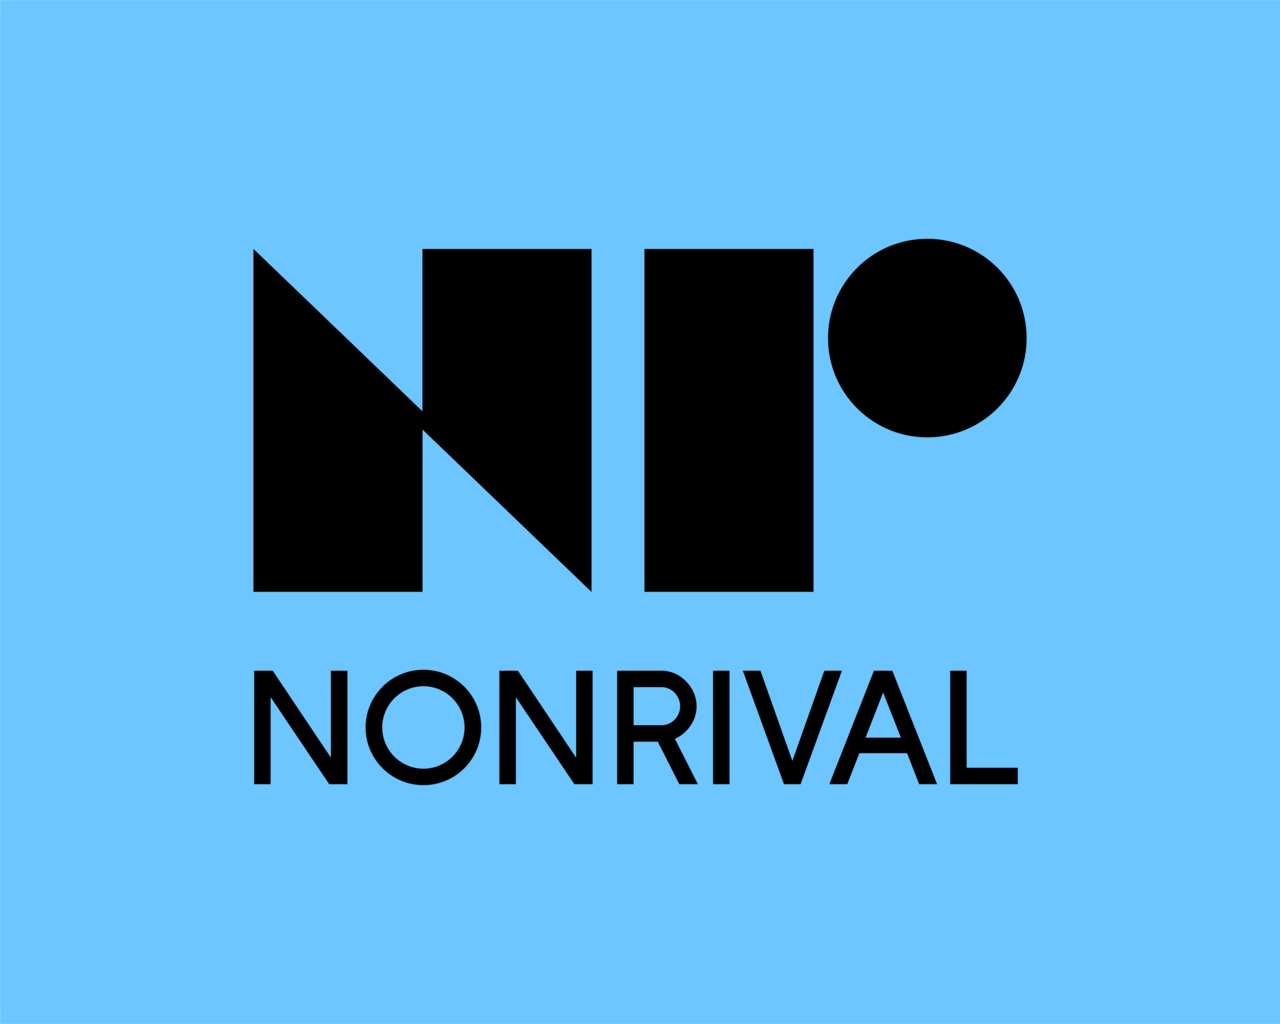 Nonrival